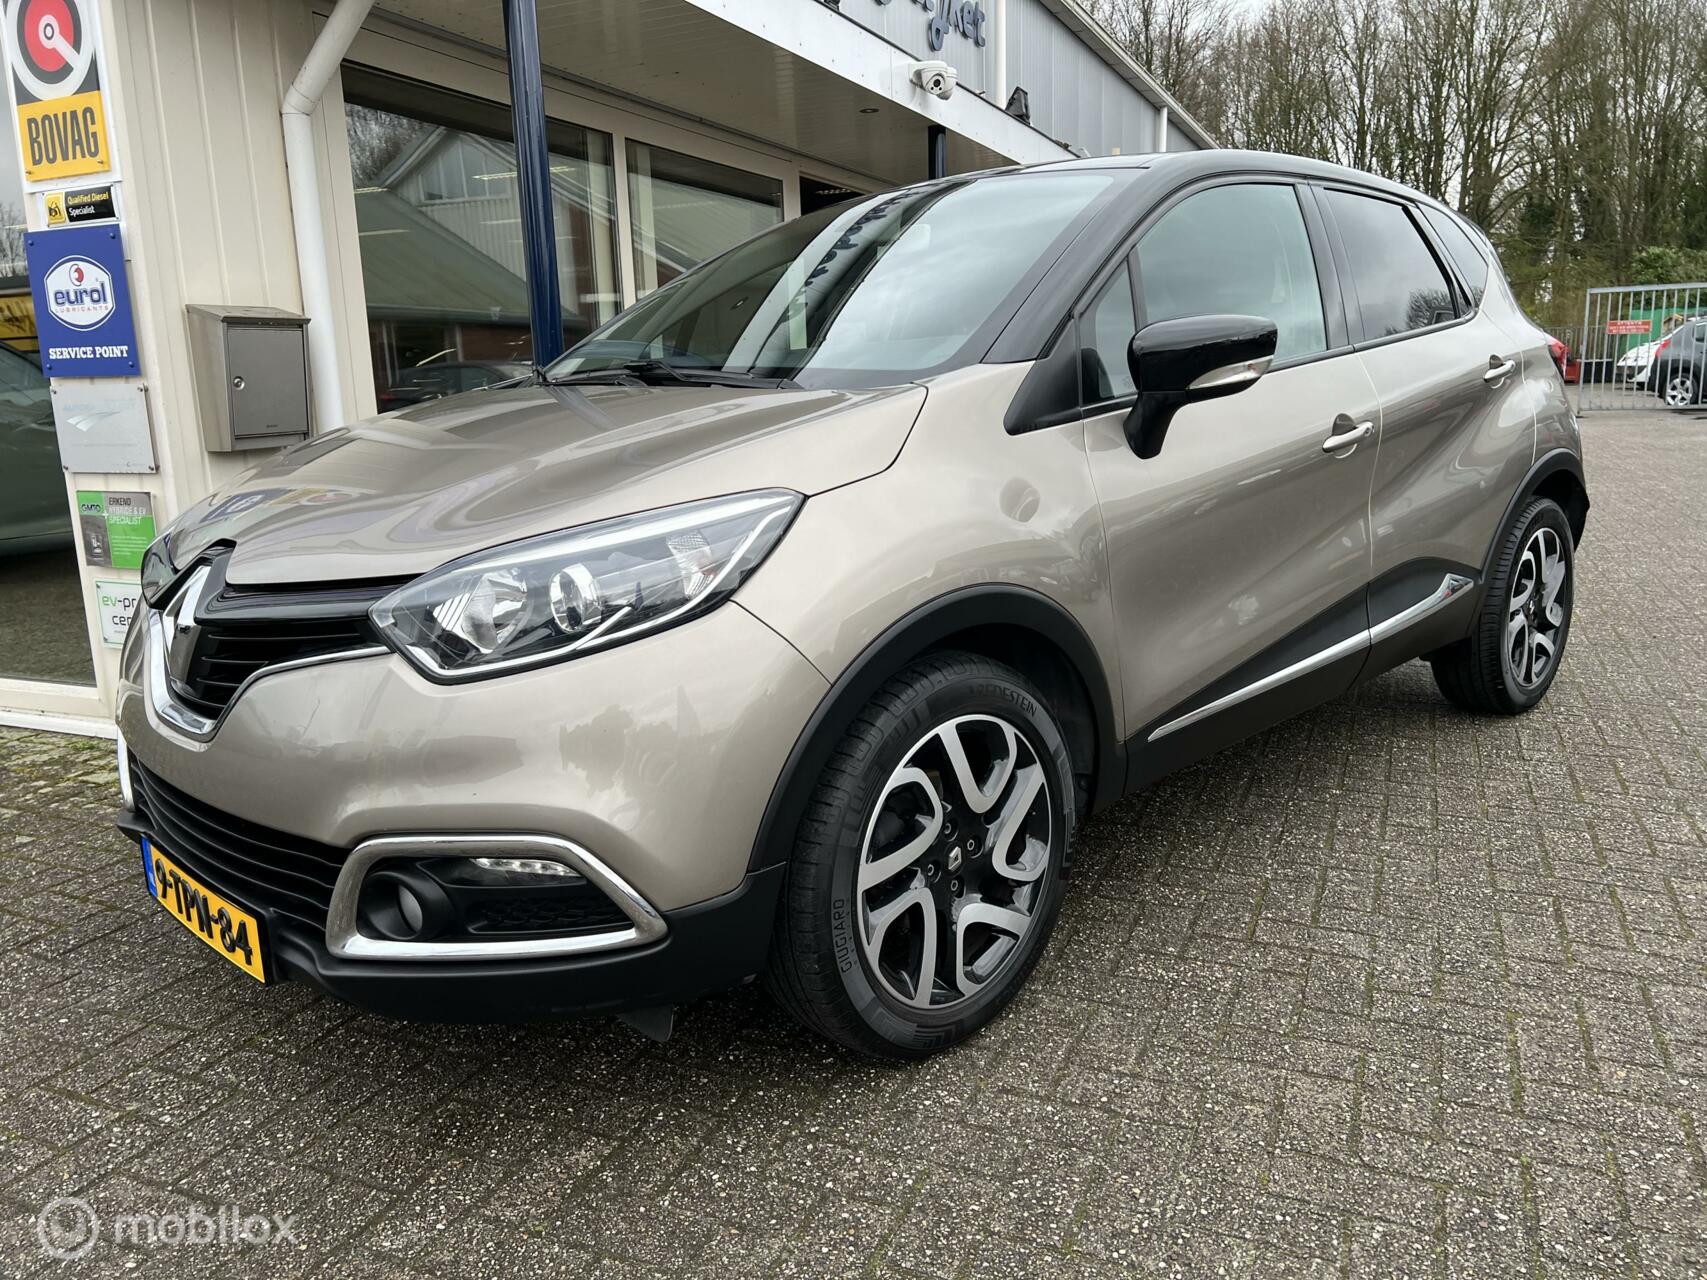 Renault Captur 0.9 TCe Dynamique bij viaBOVAG.nl